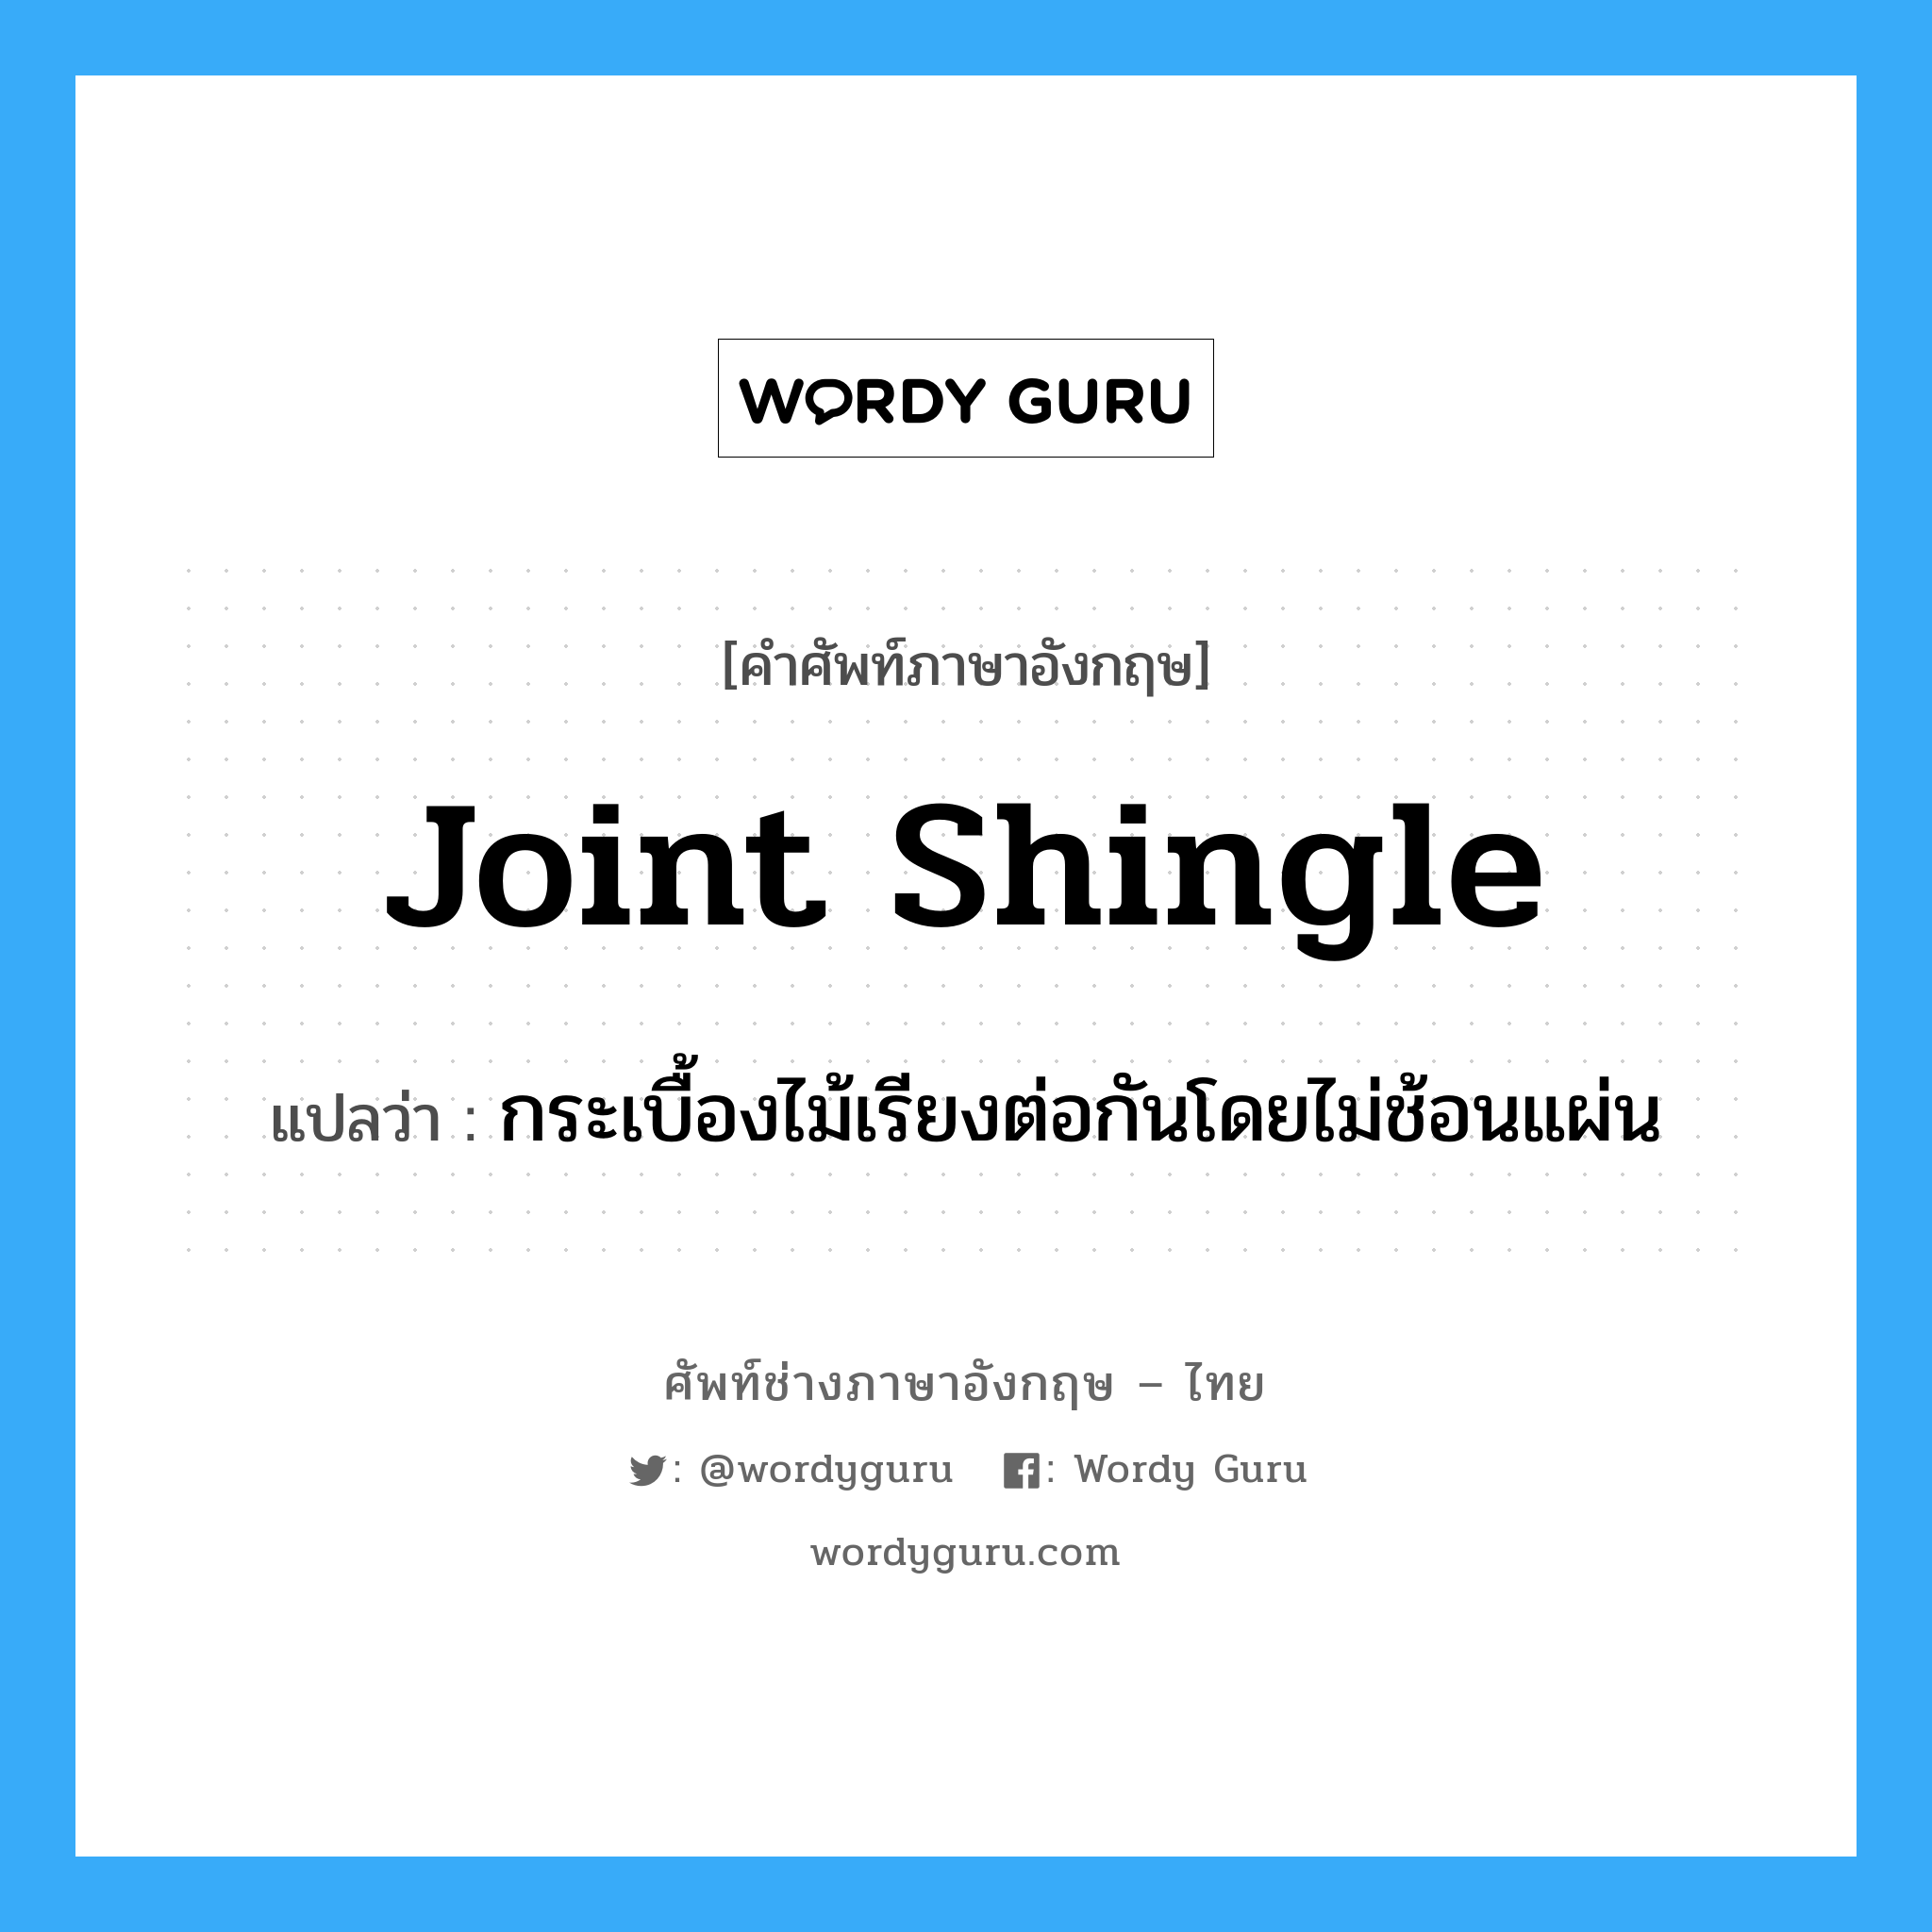 joint shingle แปลว่า?, คำศัพท์ช่างภาษาอังกฤษ - ไทย joint shingle คำศัพท์ภาษาอังกฤษ joint shingle แปลว่า กระเบื้องไม้เรียงต่อกันโดยไม่ช้อนแผ่น